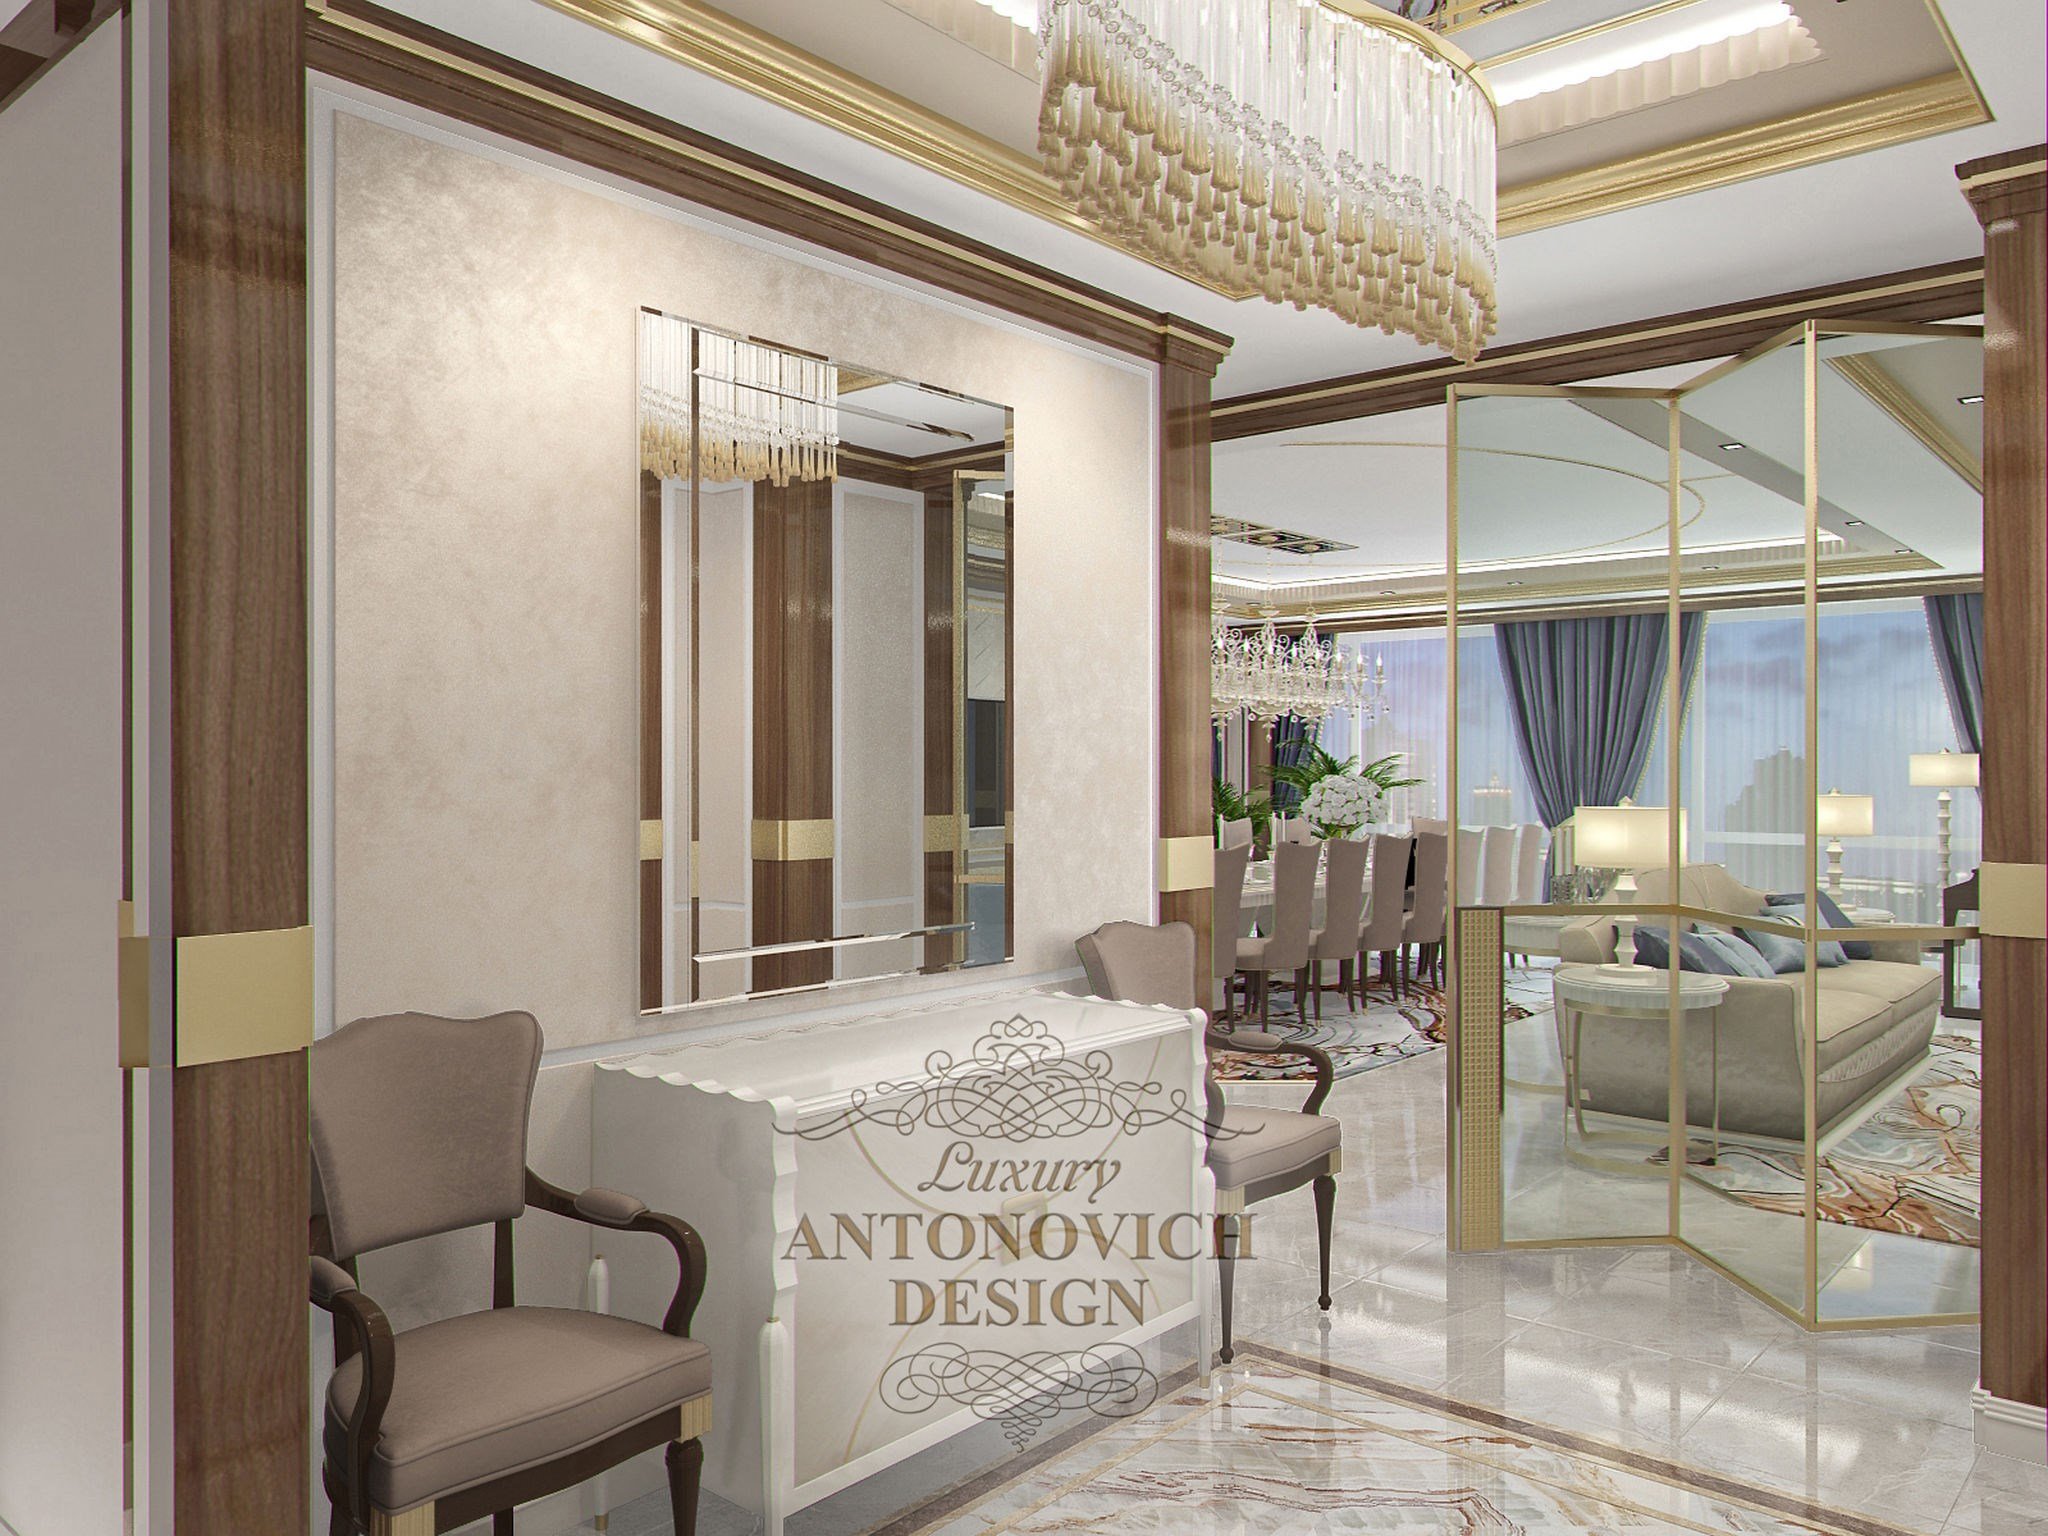 Проект потолка в холле с подсветкой от студии элитных интерьеров Luxury ANTONOVICH DESIGN